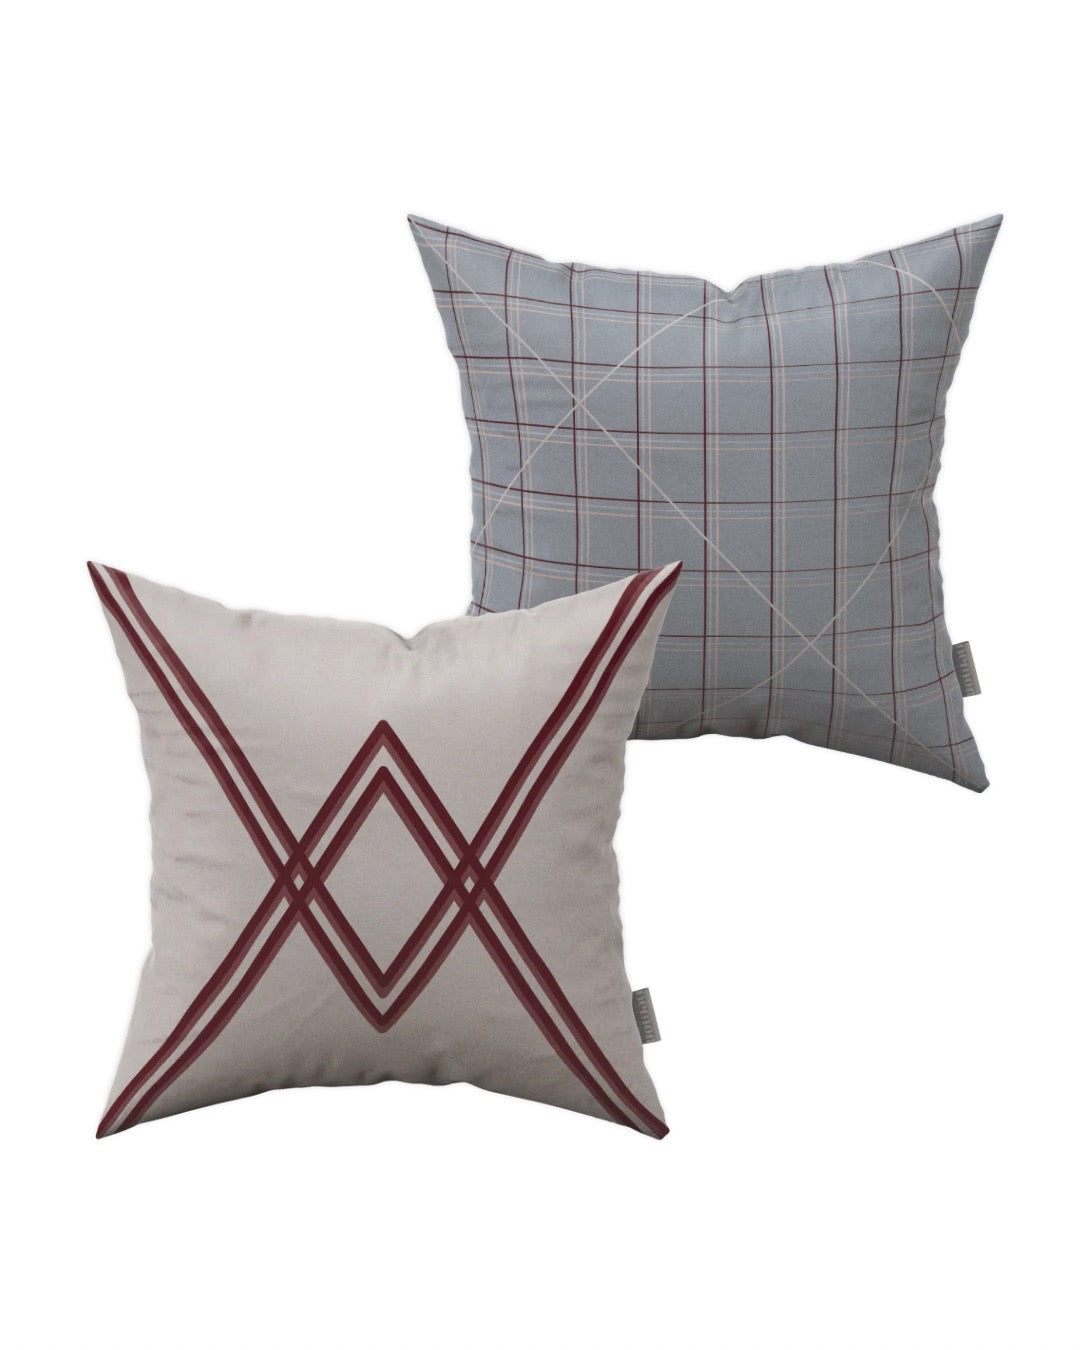 Jasmine + Burgundy Pillows - Set of 2